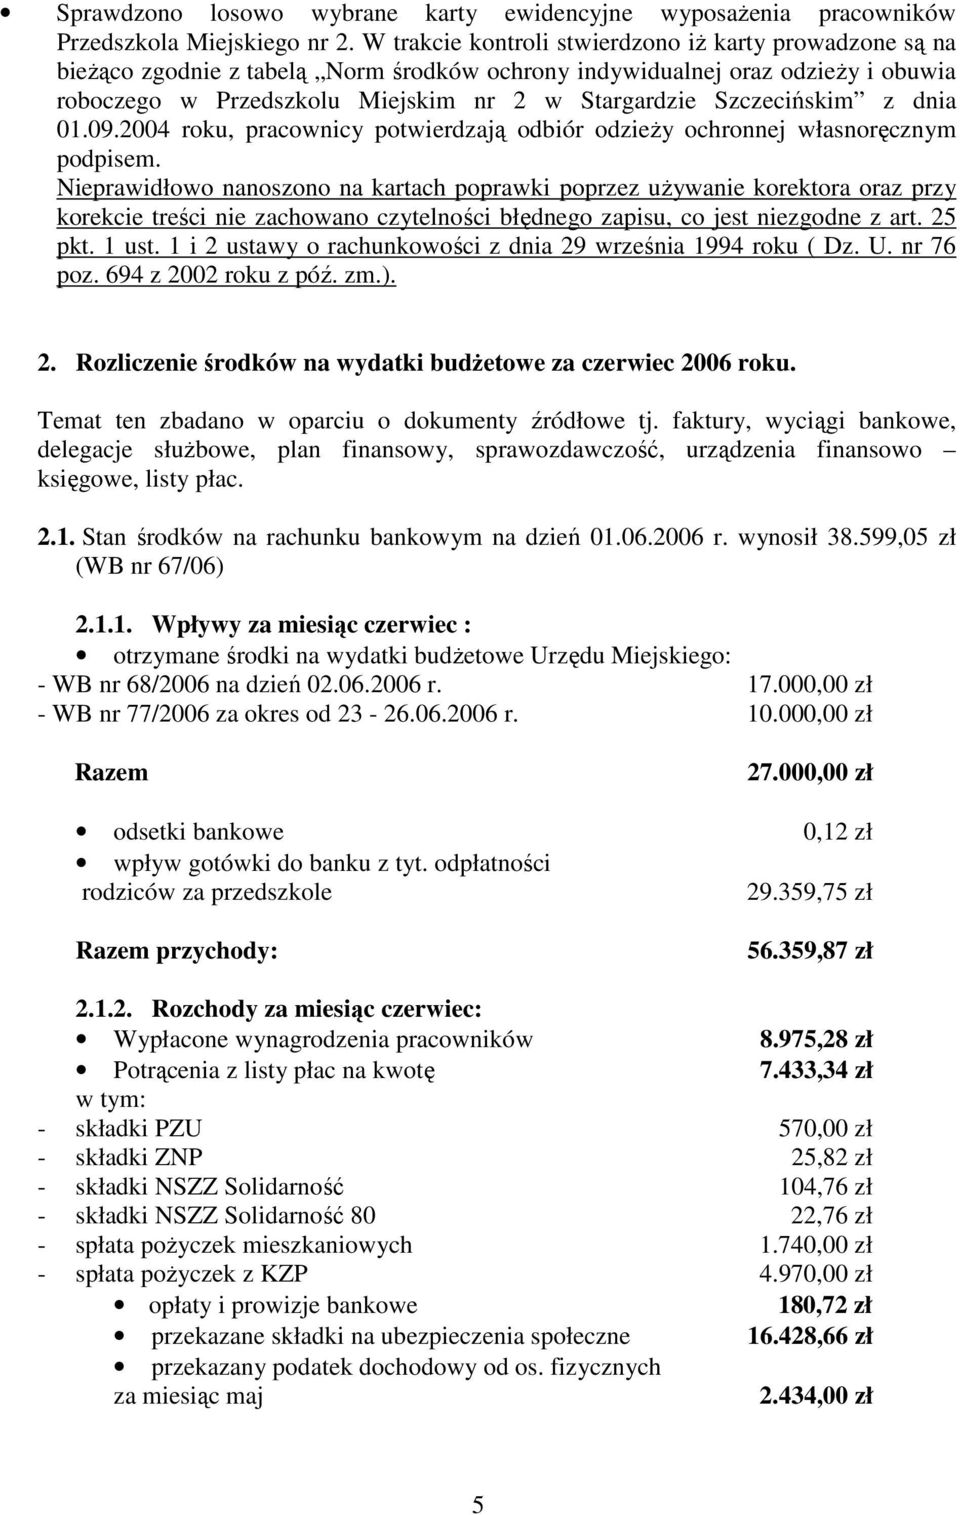 Szczecińskim z dnia 01.09.2004 roku, pracownicy potwierdzają odbiór odzieŝy ochronnej własnoręcznym podpisem.